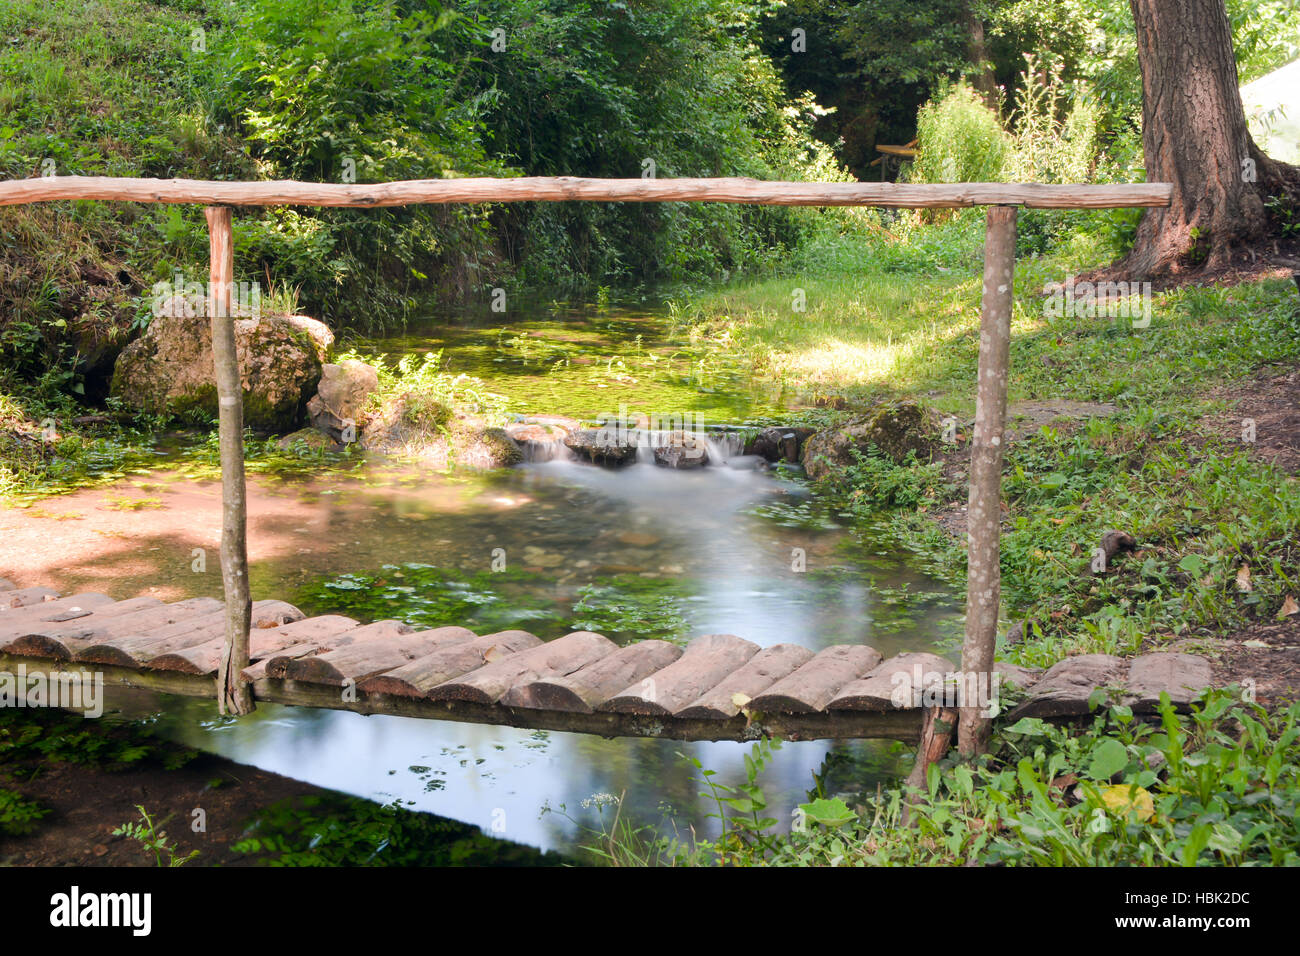 Small bridge over a water stream Stock Photo